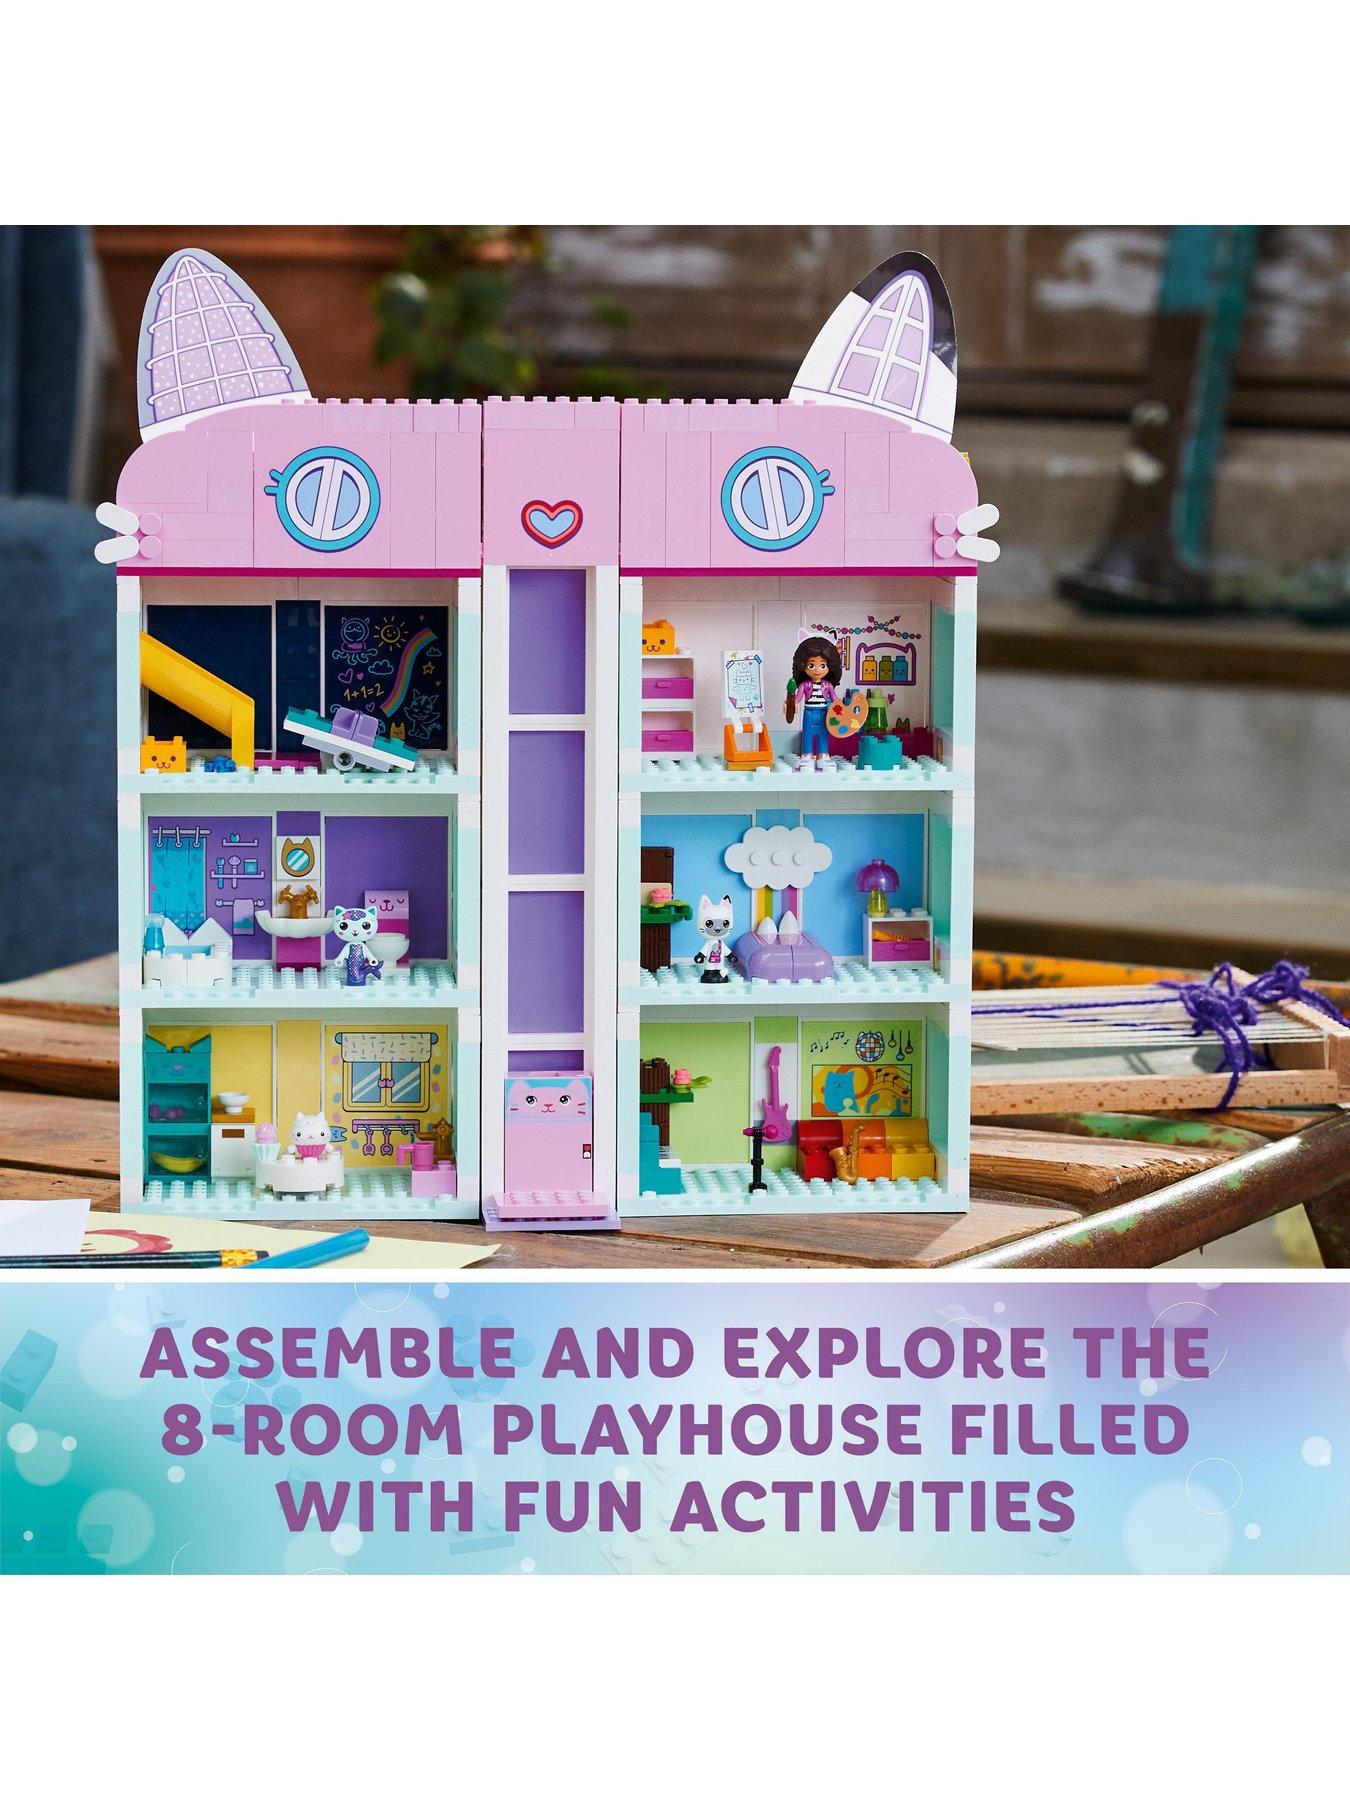 LEGO 10788 Gabby's Dollhouse, 5702017424125